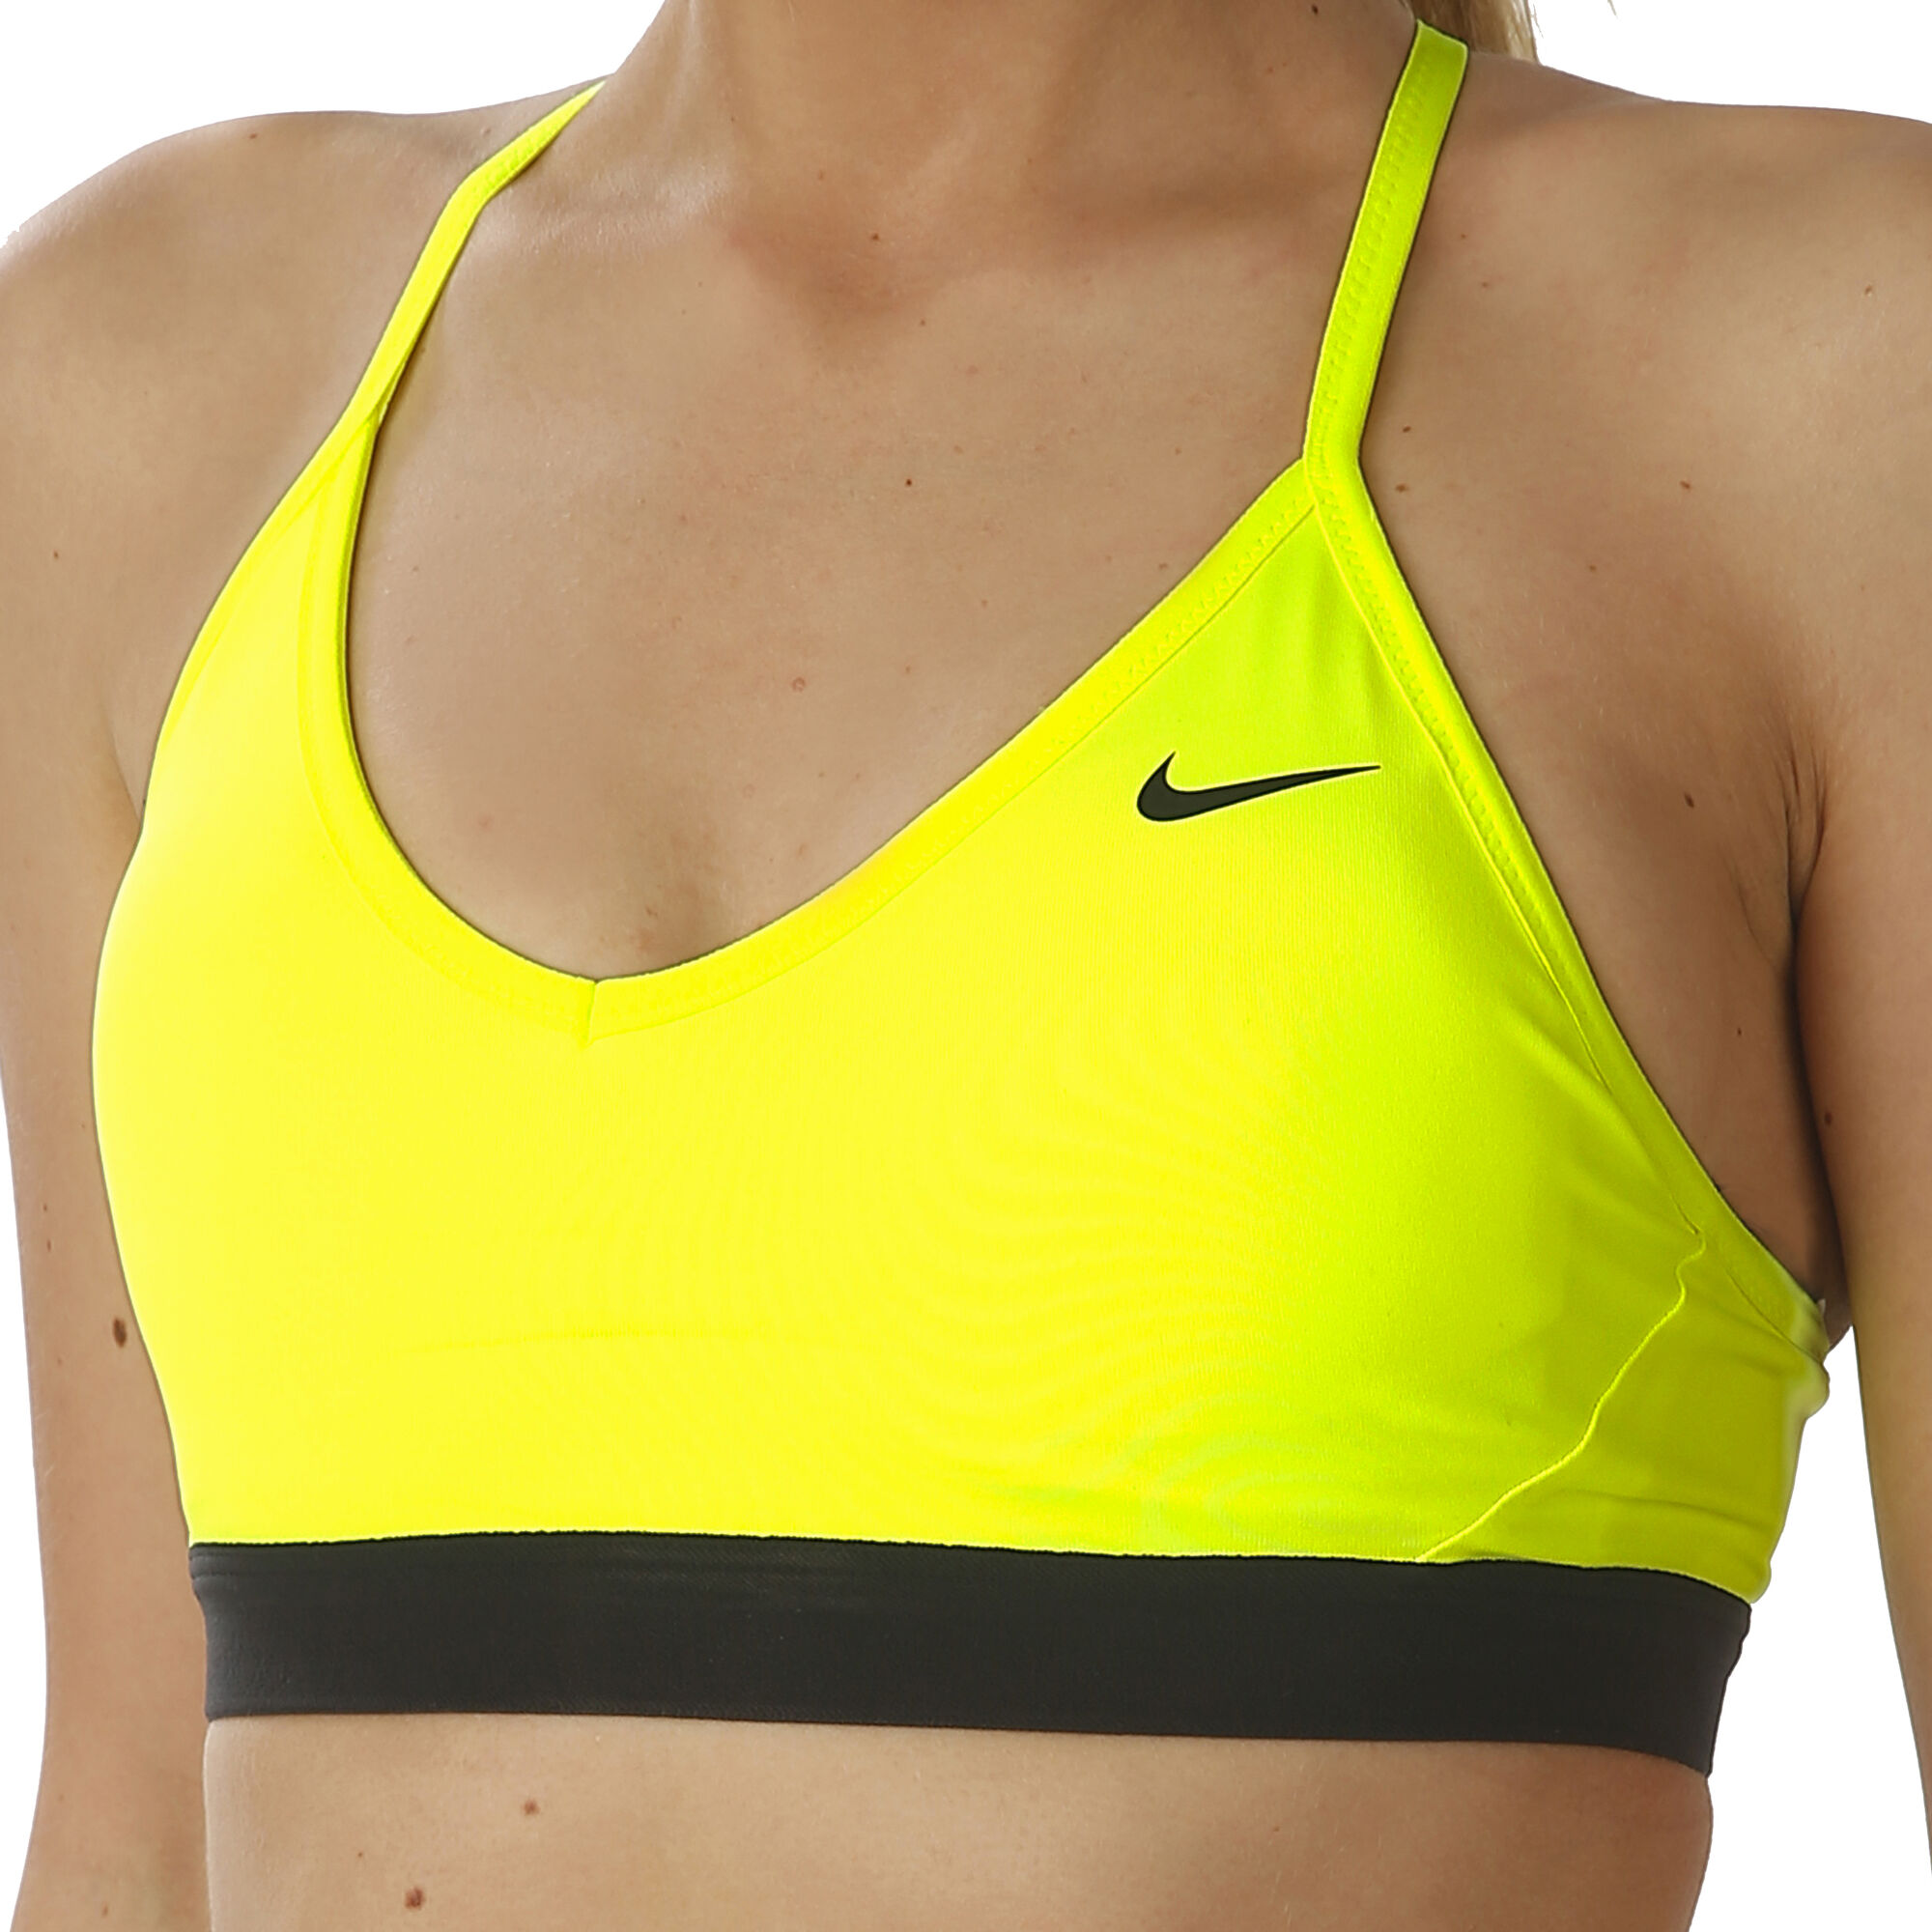 Nike neon yellow unlined sports bra #neon - Depop